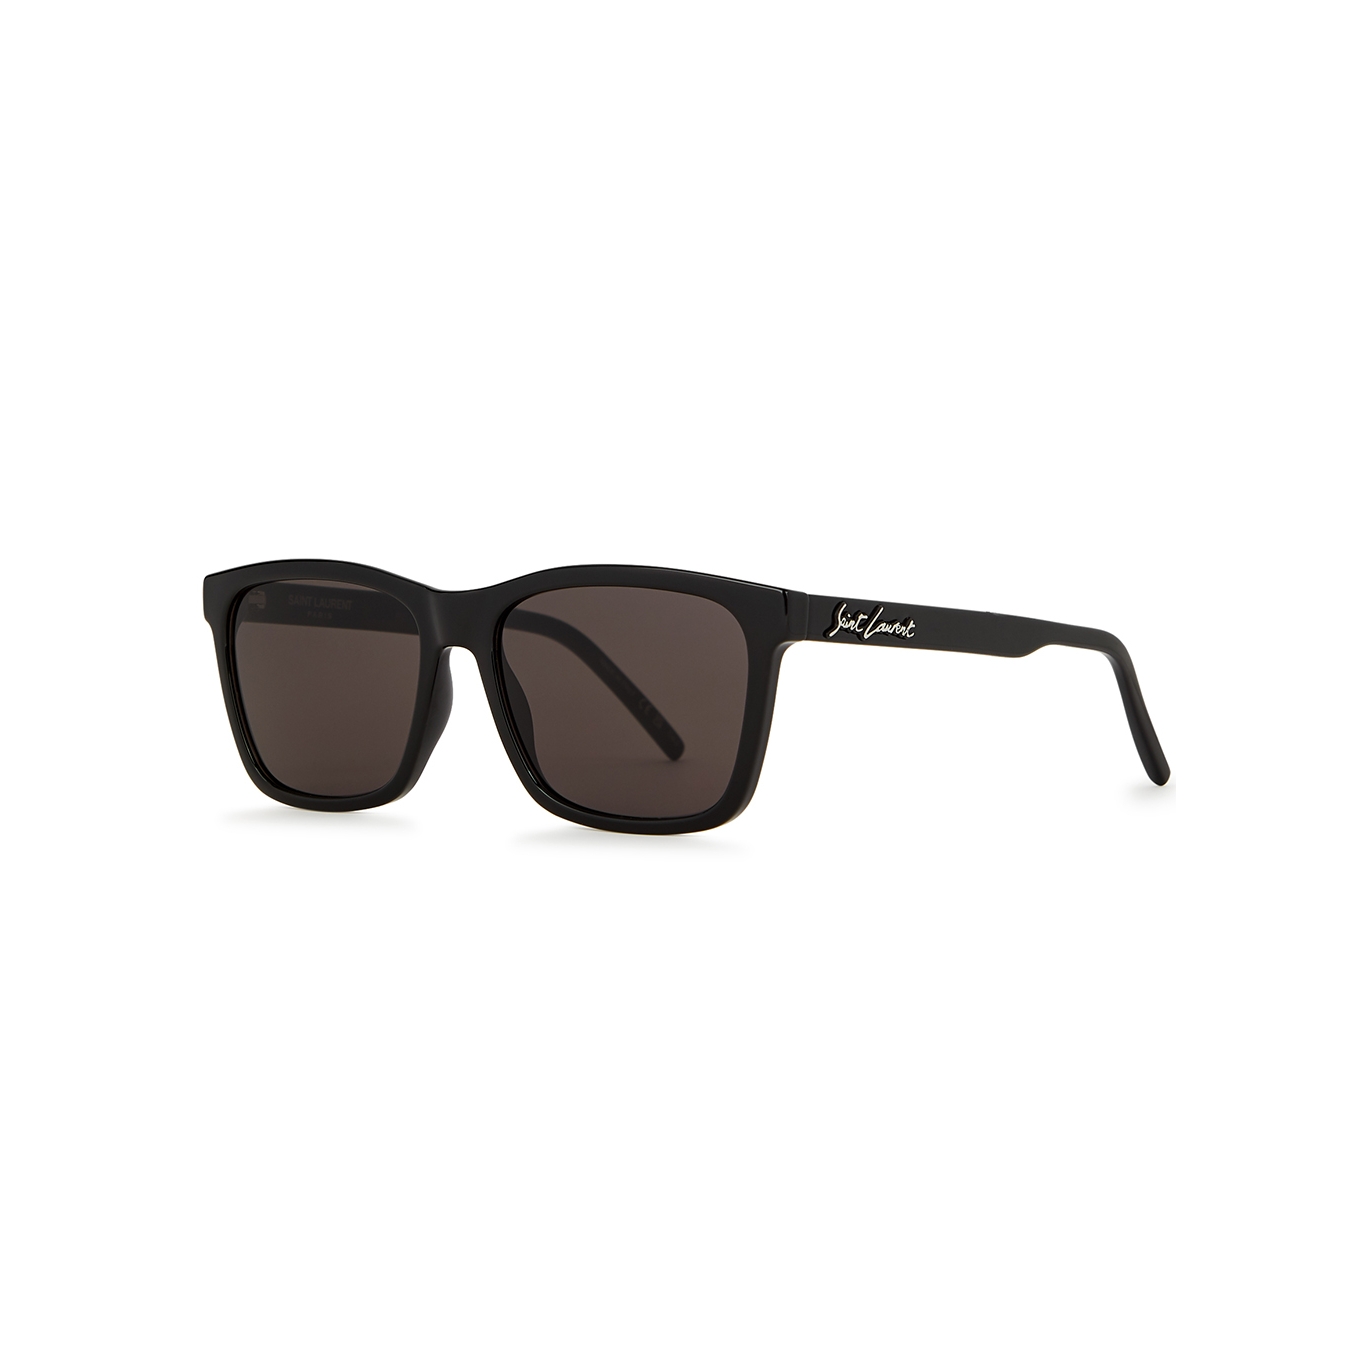 Saint Laurent SL318 Black Rectangle-frame, Sunglasses, Grey Lenses